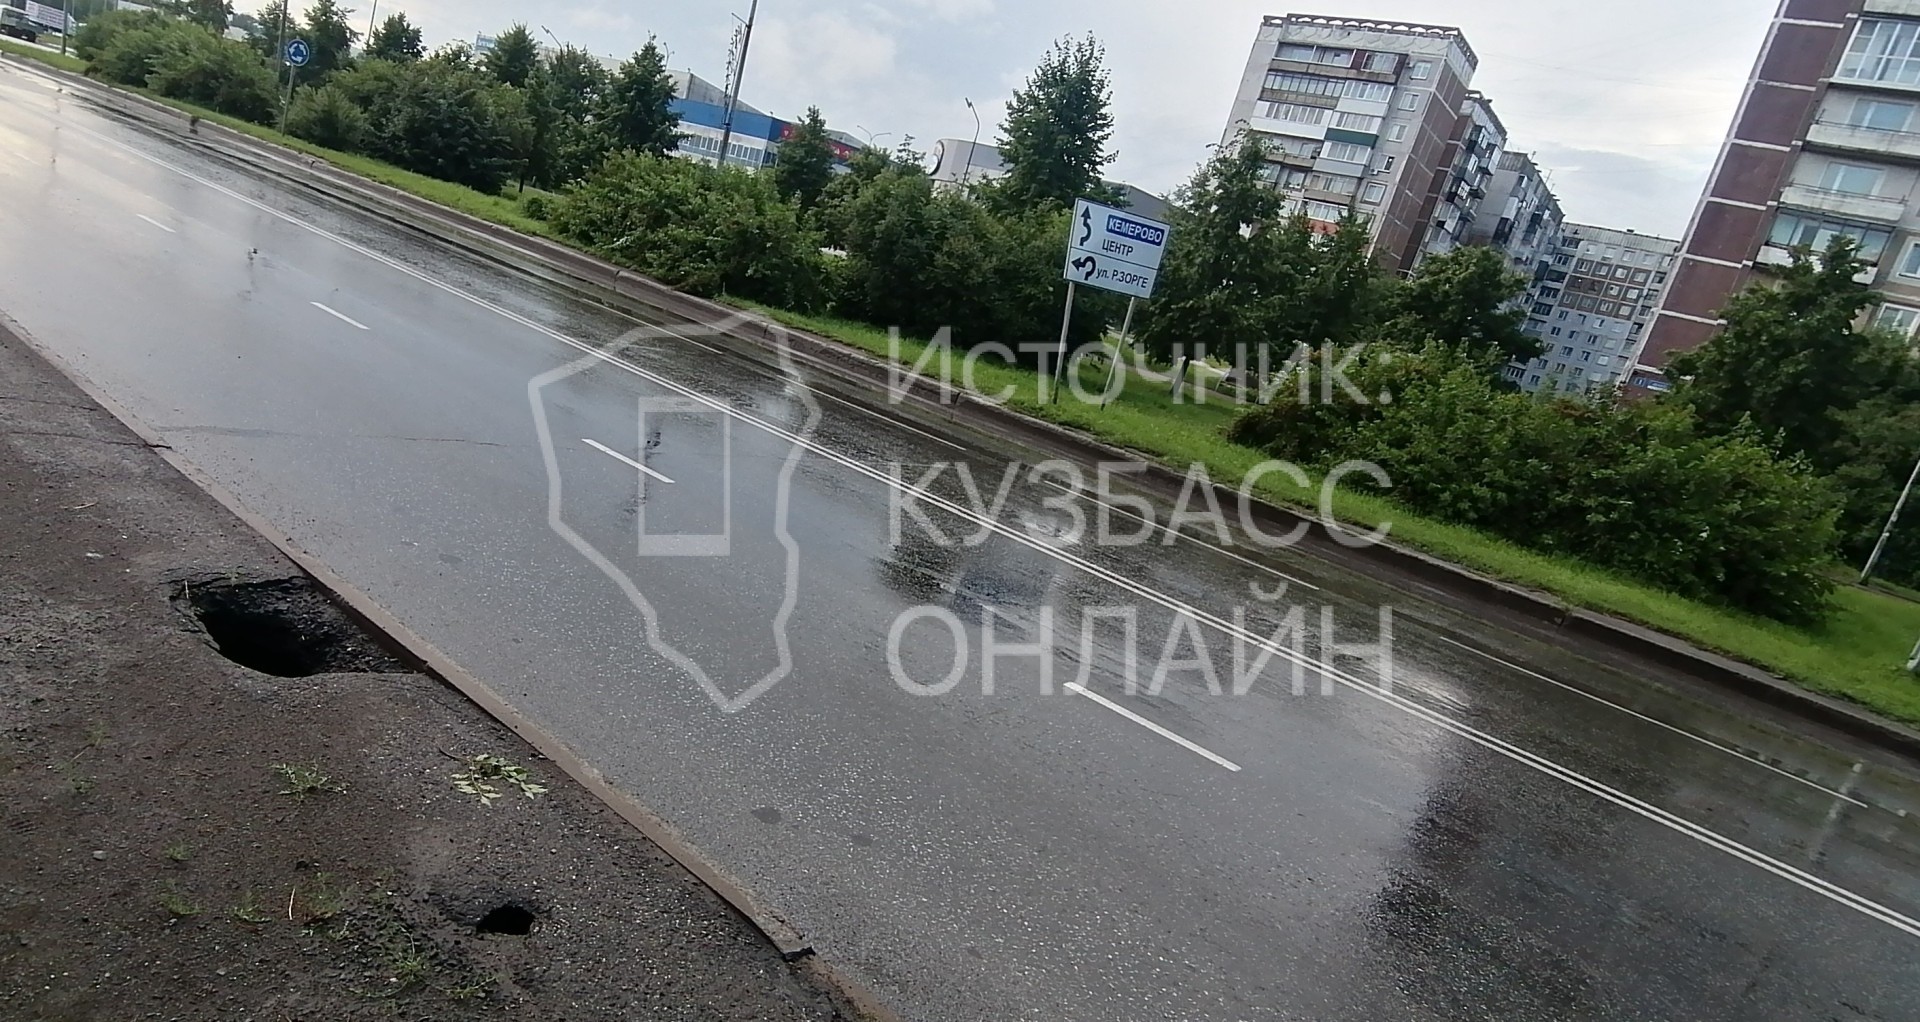 Глубокая дыра образовалась посреди тротуара на проспекте в Новокузнецке